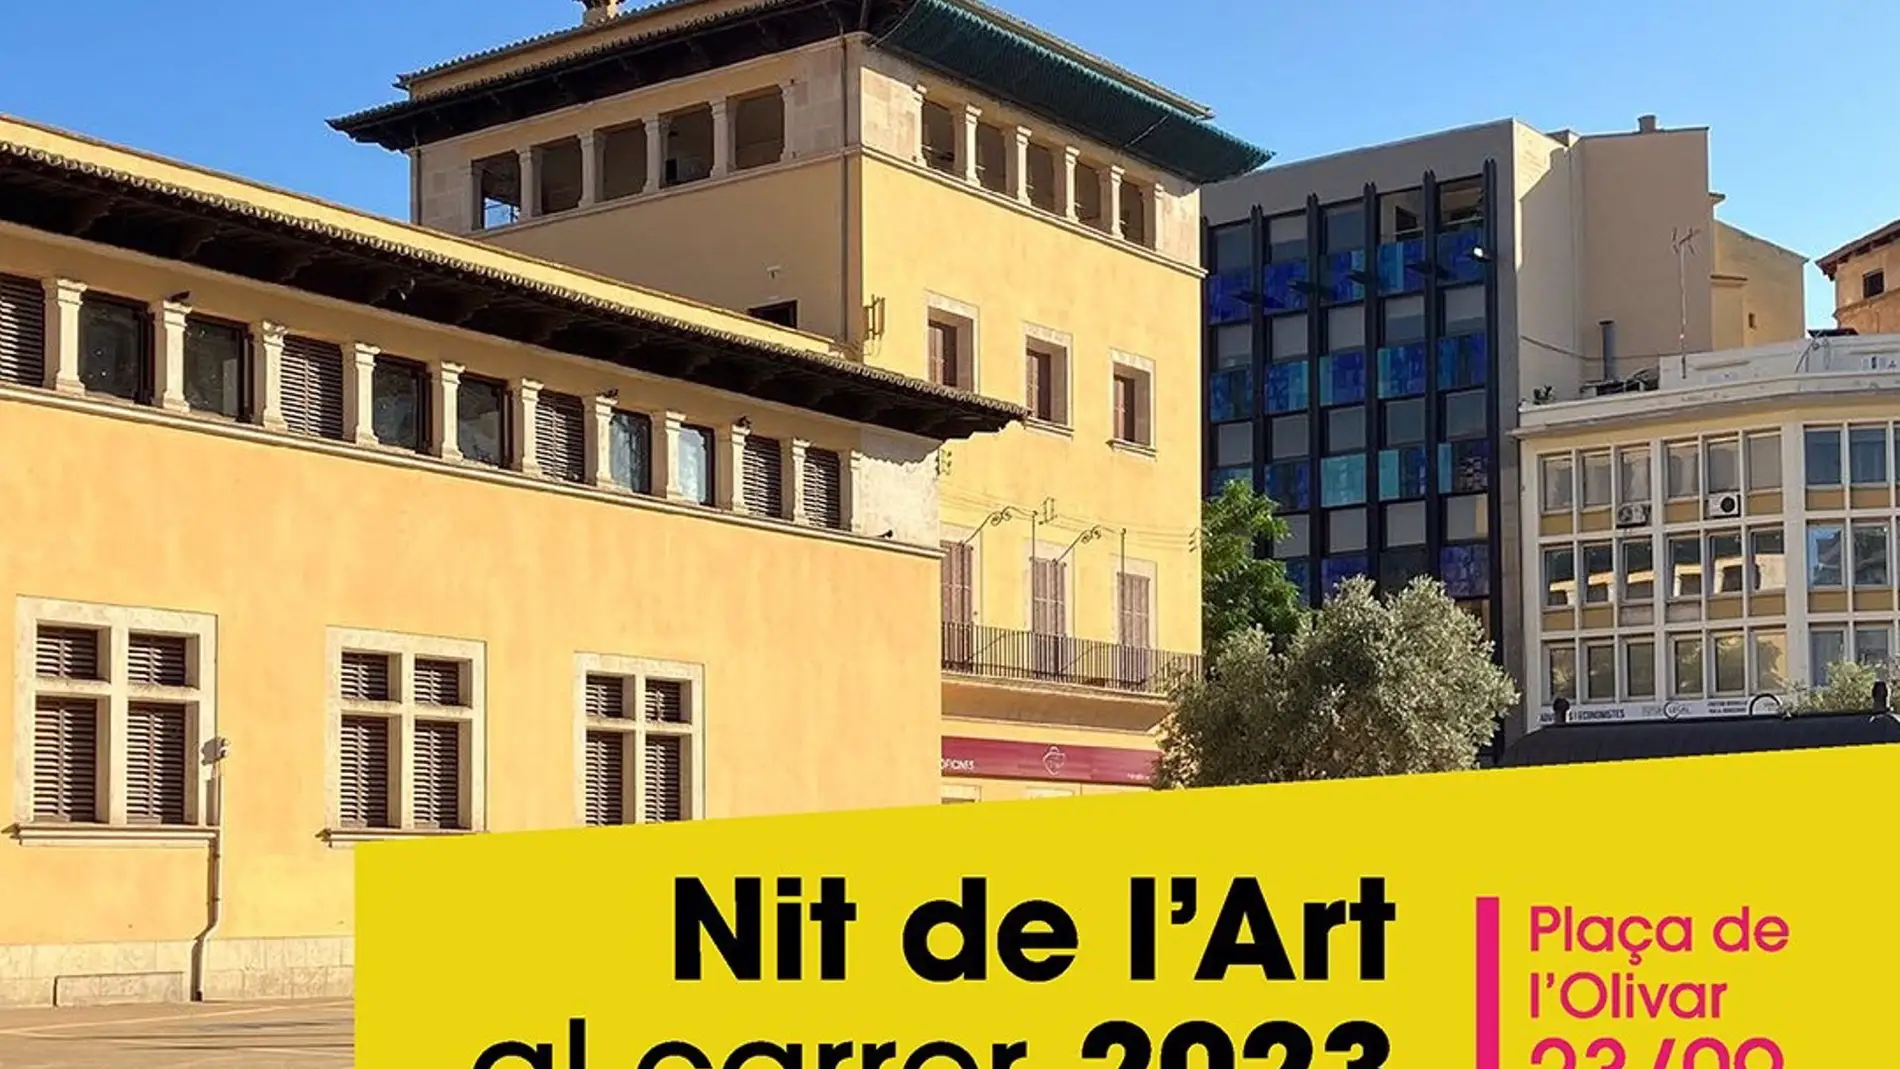 El Ayuntamiento de Palma abre el plazo de presentación de propuestas para la Nit de l'Art al Carrer 2023